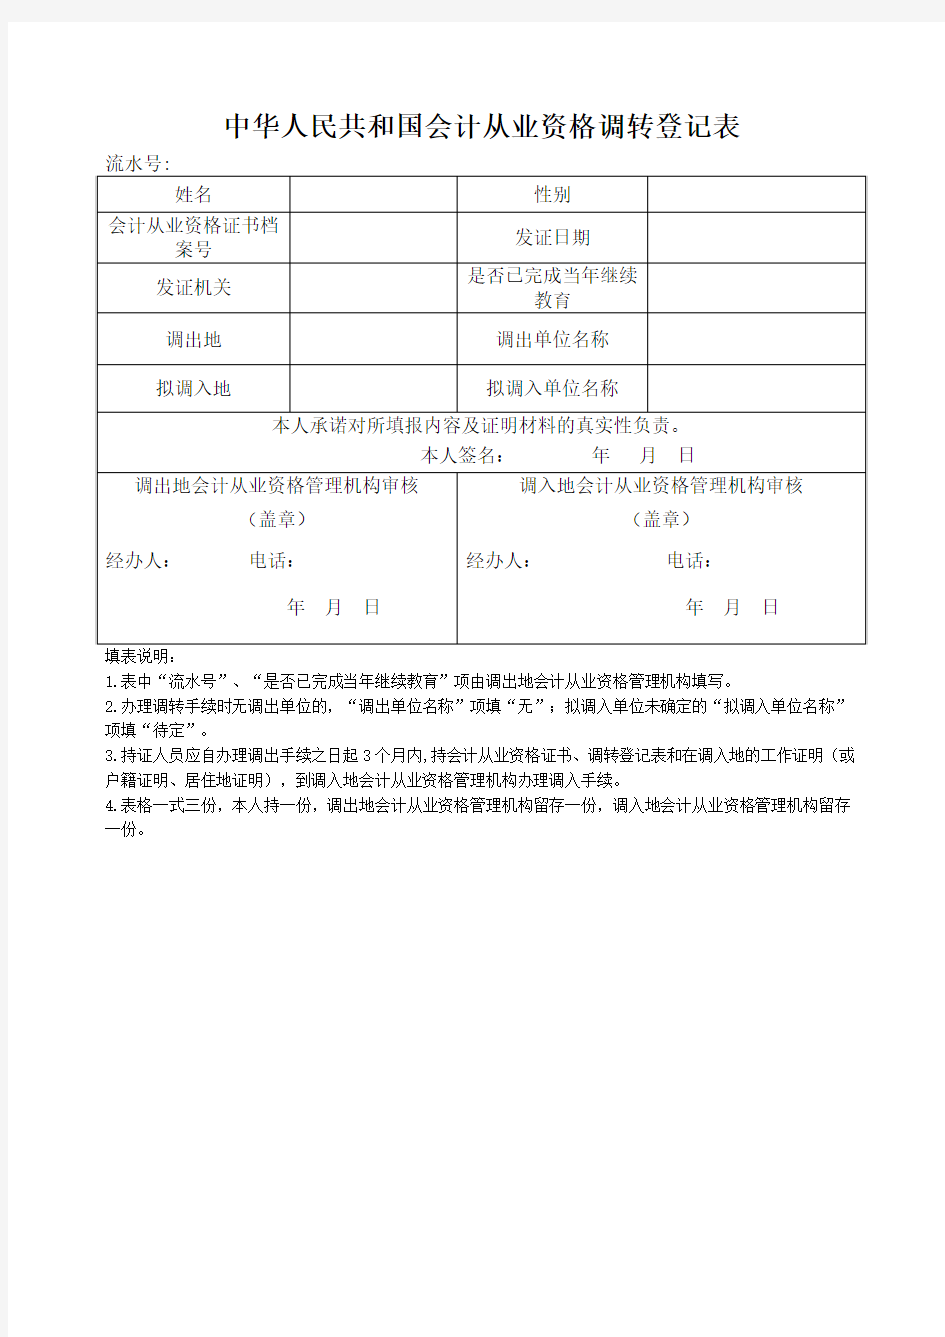 中华人民共和国会计从业资格证书定期换证登记表